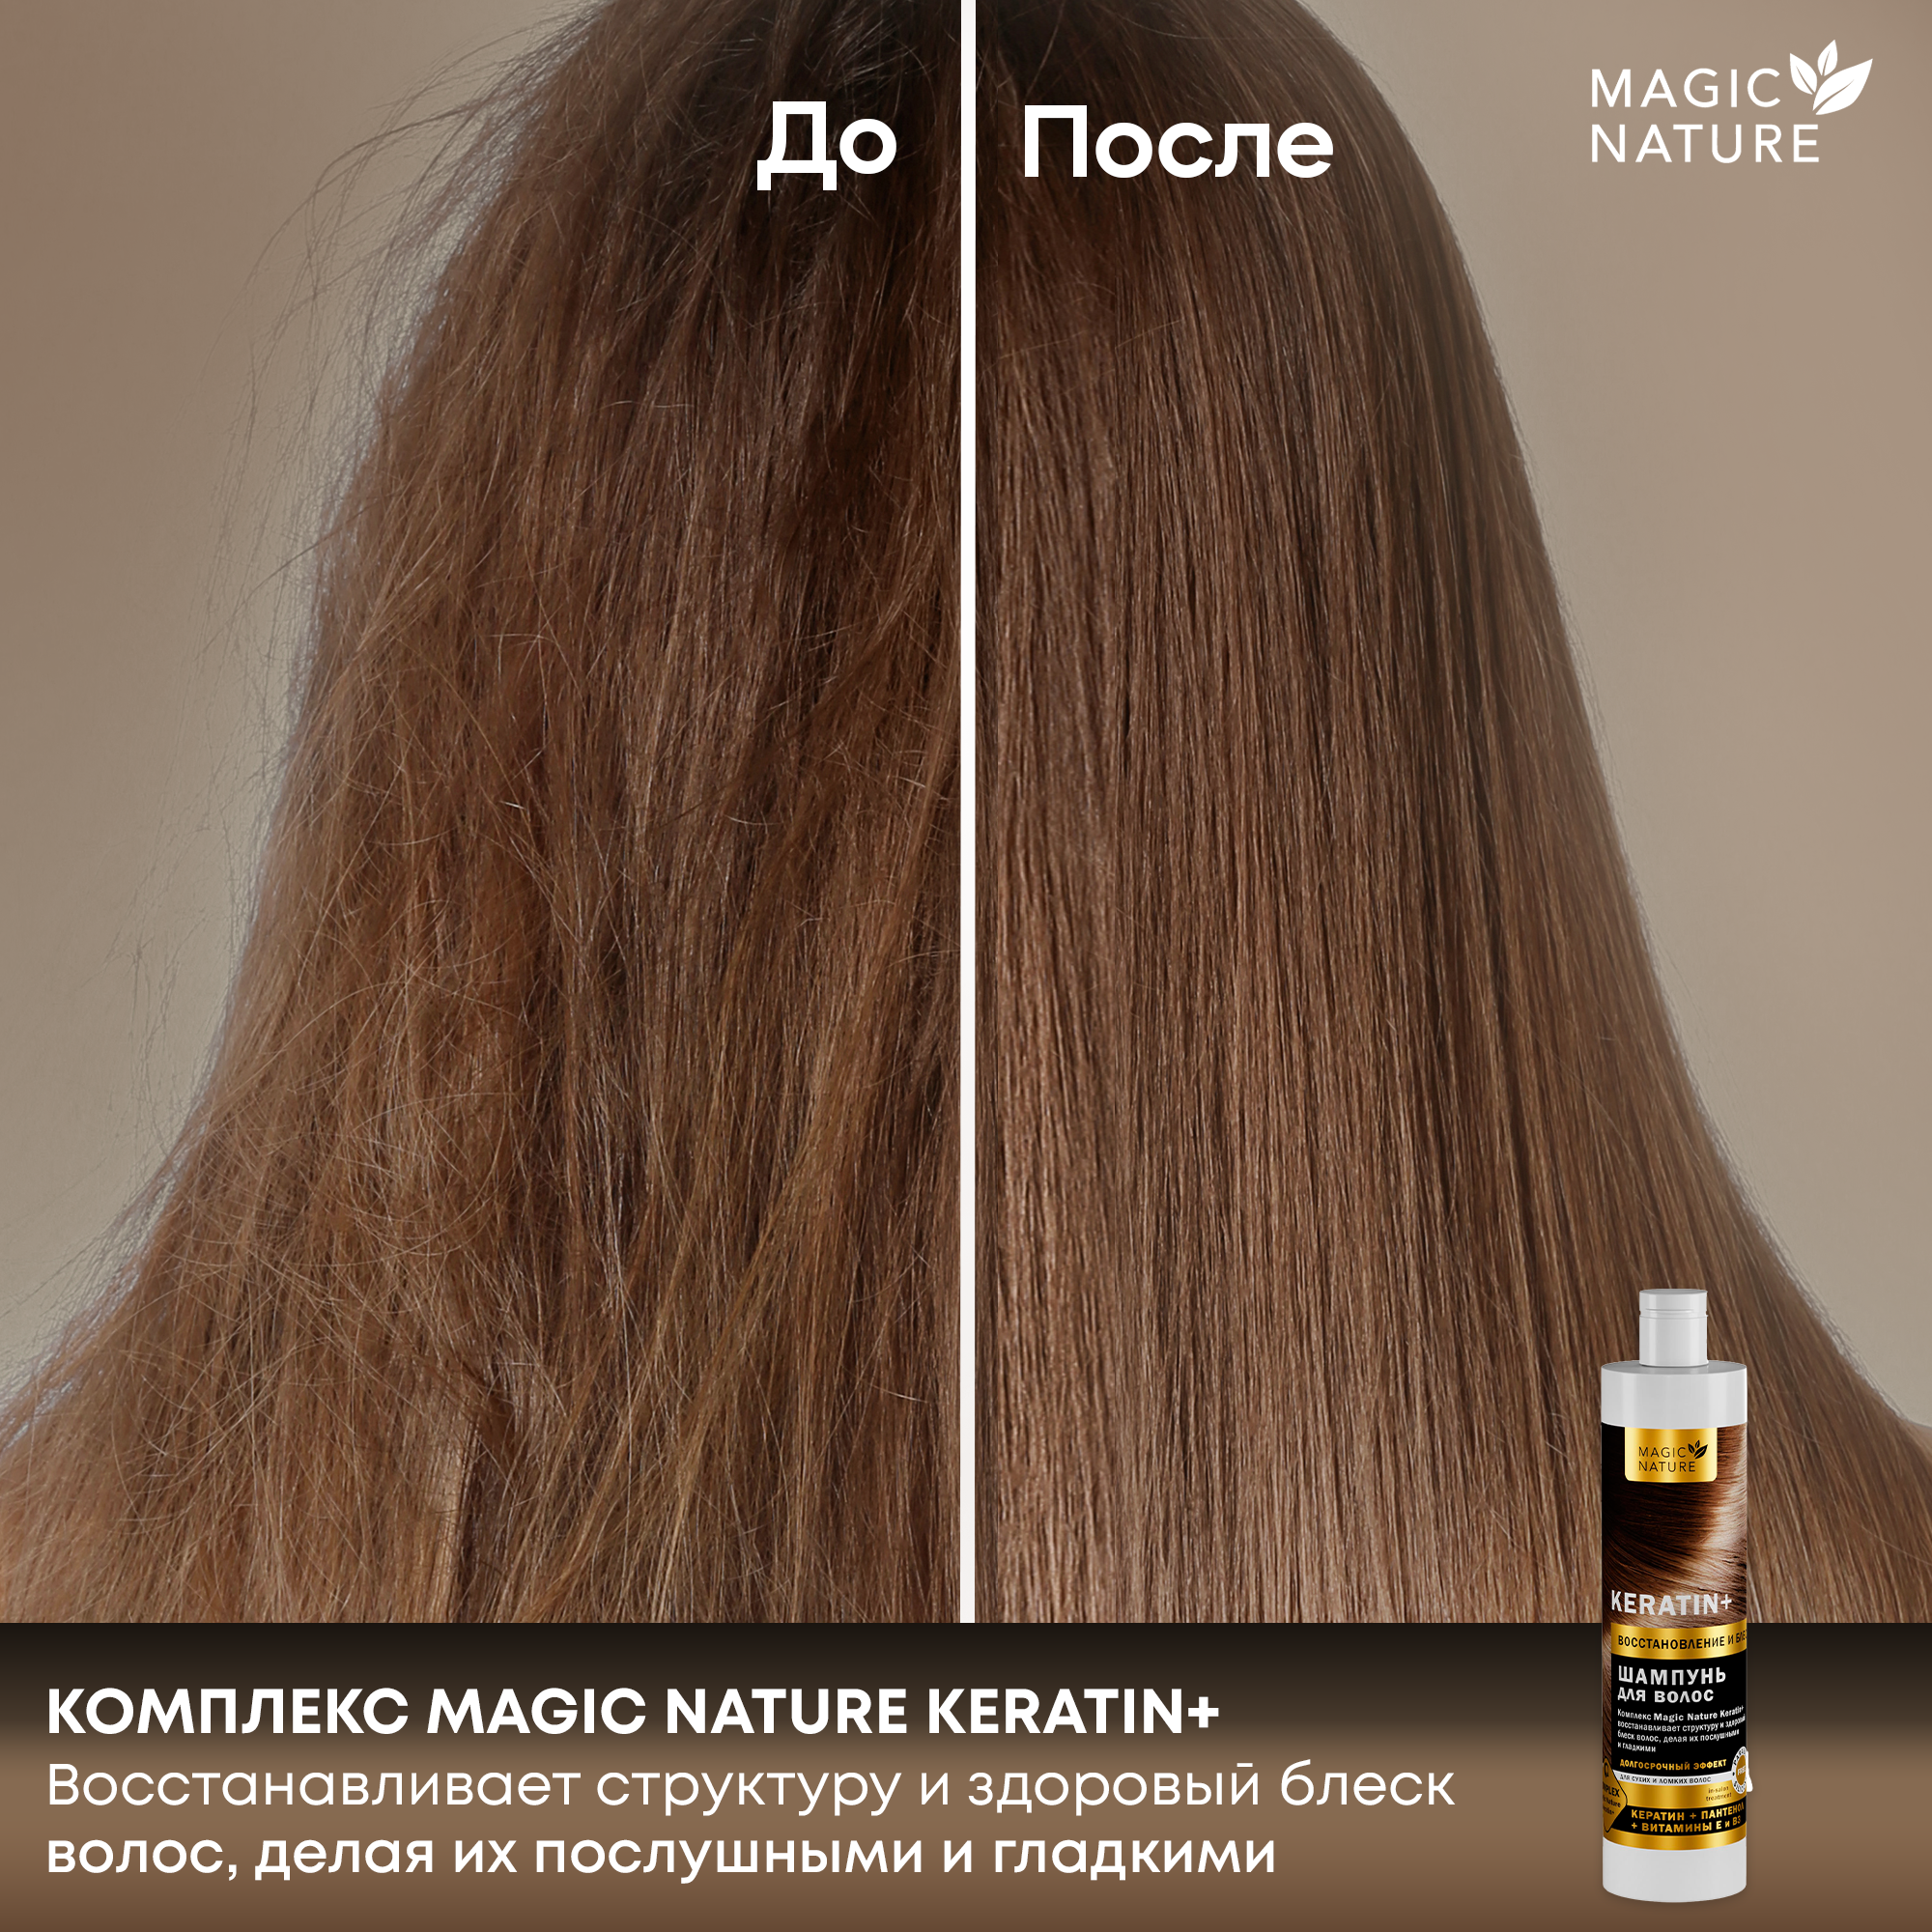 MAGIC NATURE Шампунь для волос KERATIN+ с кератином, восстановление и блеск, для роста волос, 400 мл.